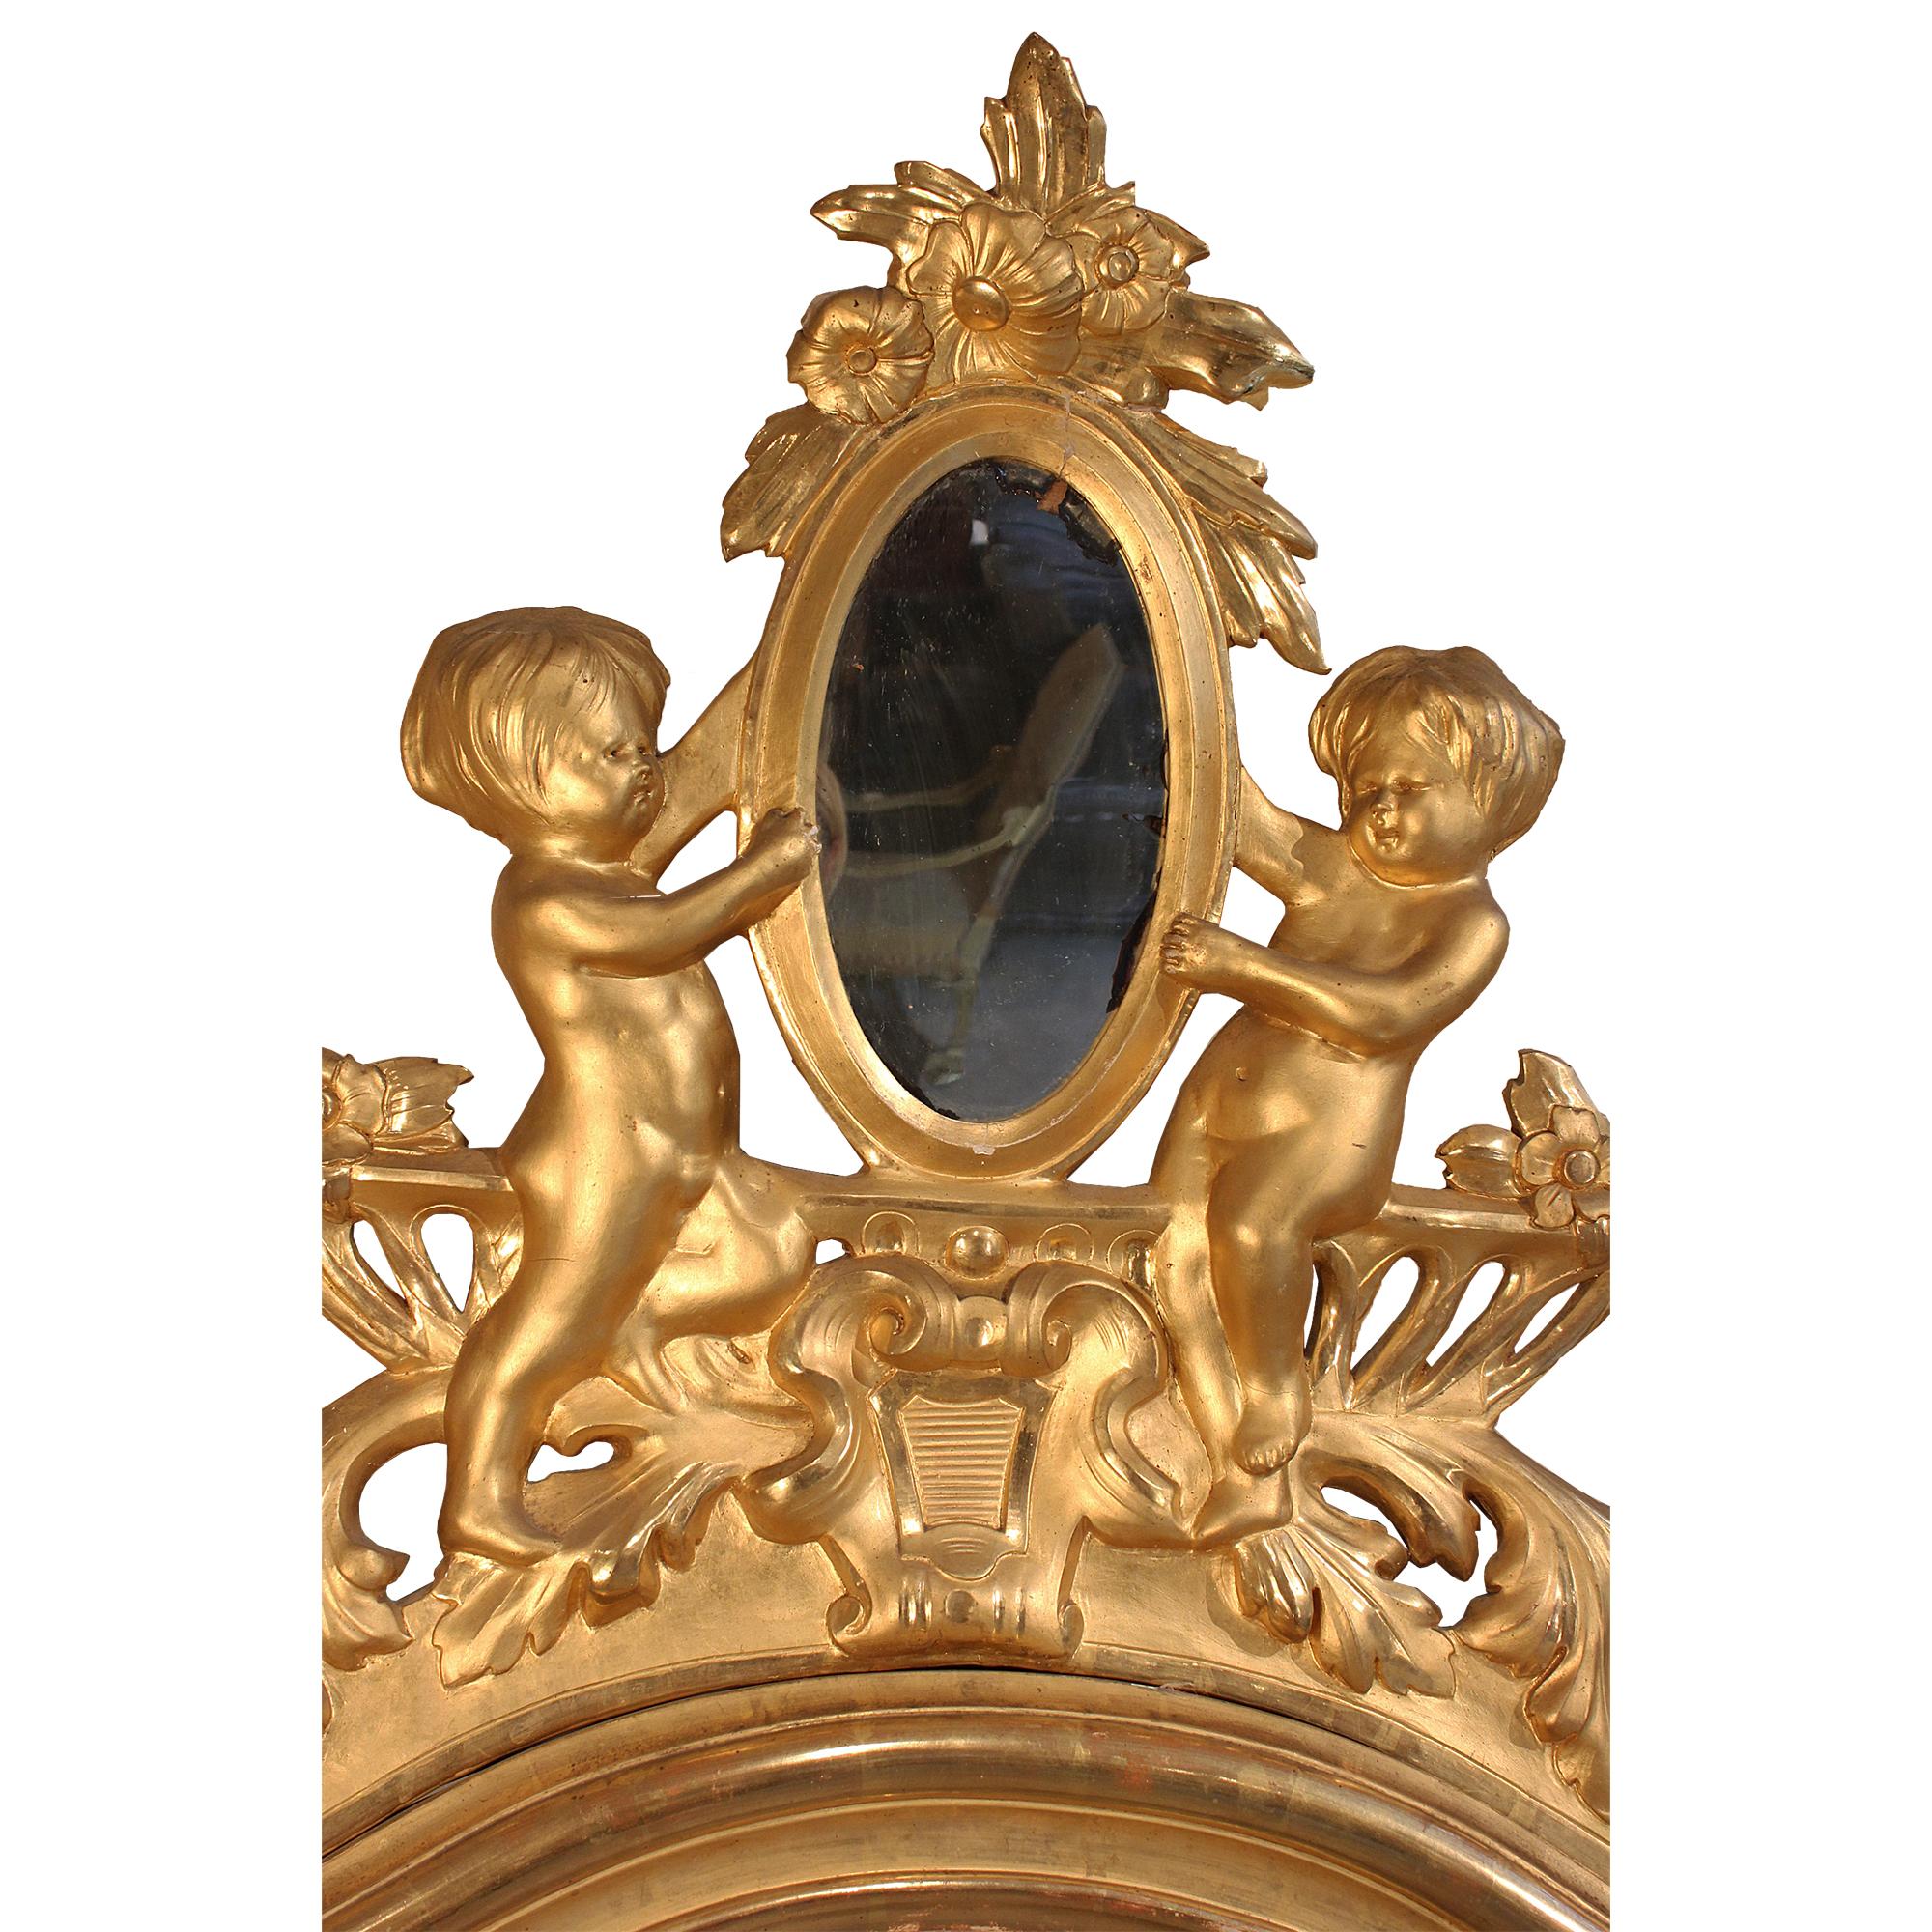 Une paire spectaculaire de miroirs italiens en bois doré du 19ème siècle. Les miroirs rectangulaires à encadrement mouluré, à plateau incurvé et réserve centrale ajourée, sont ornés de deux charmants angelots présentant un miroir ovale à fleurs.